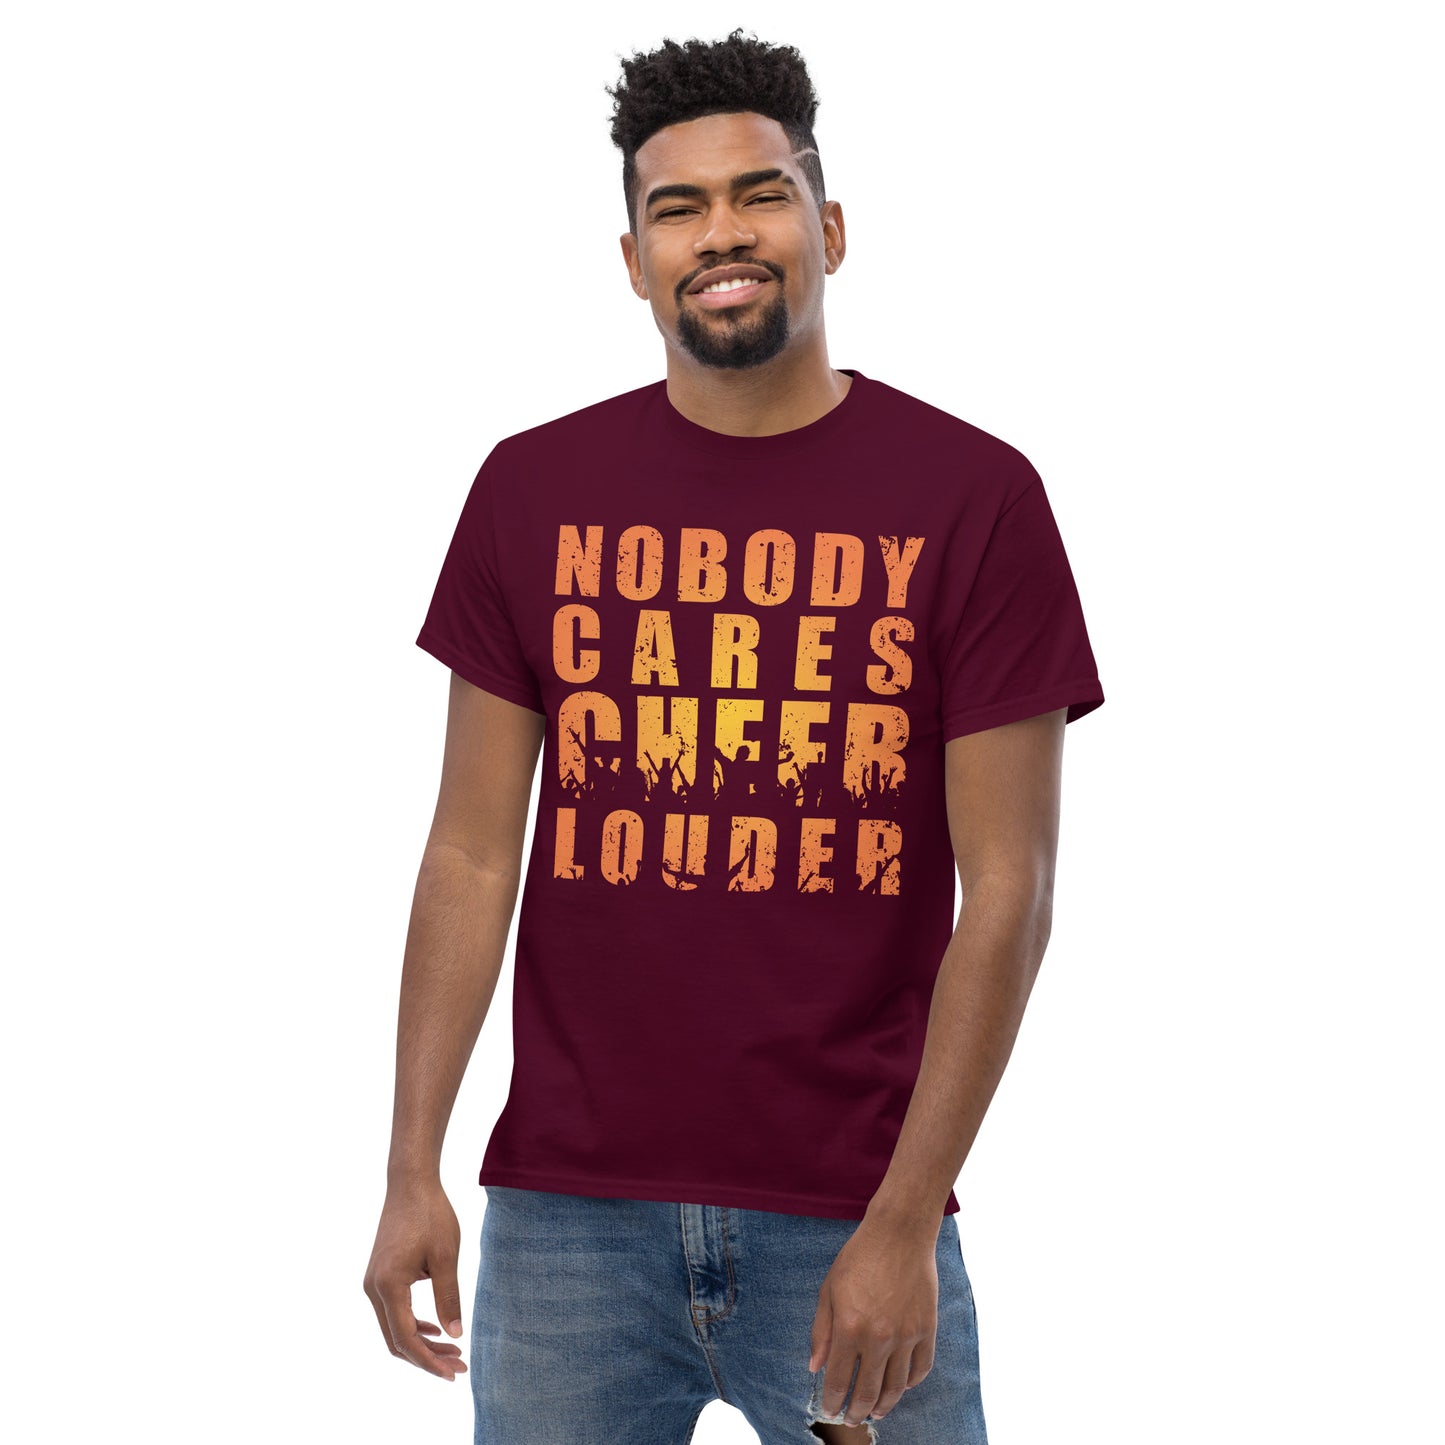 Cheer Louder T-Shirt